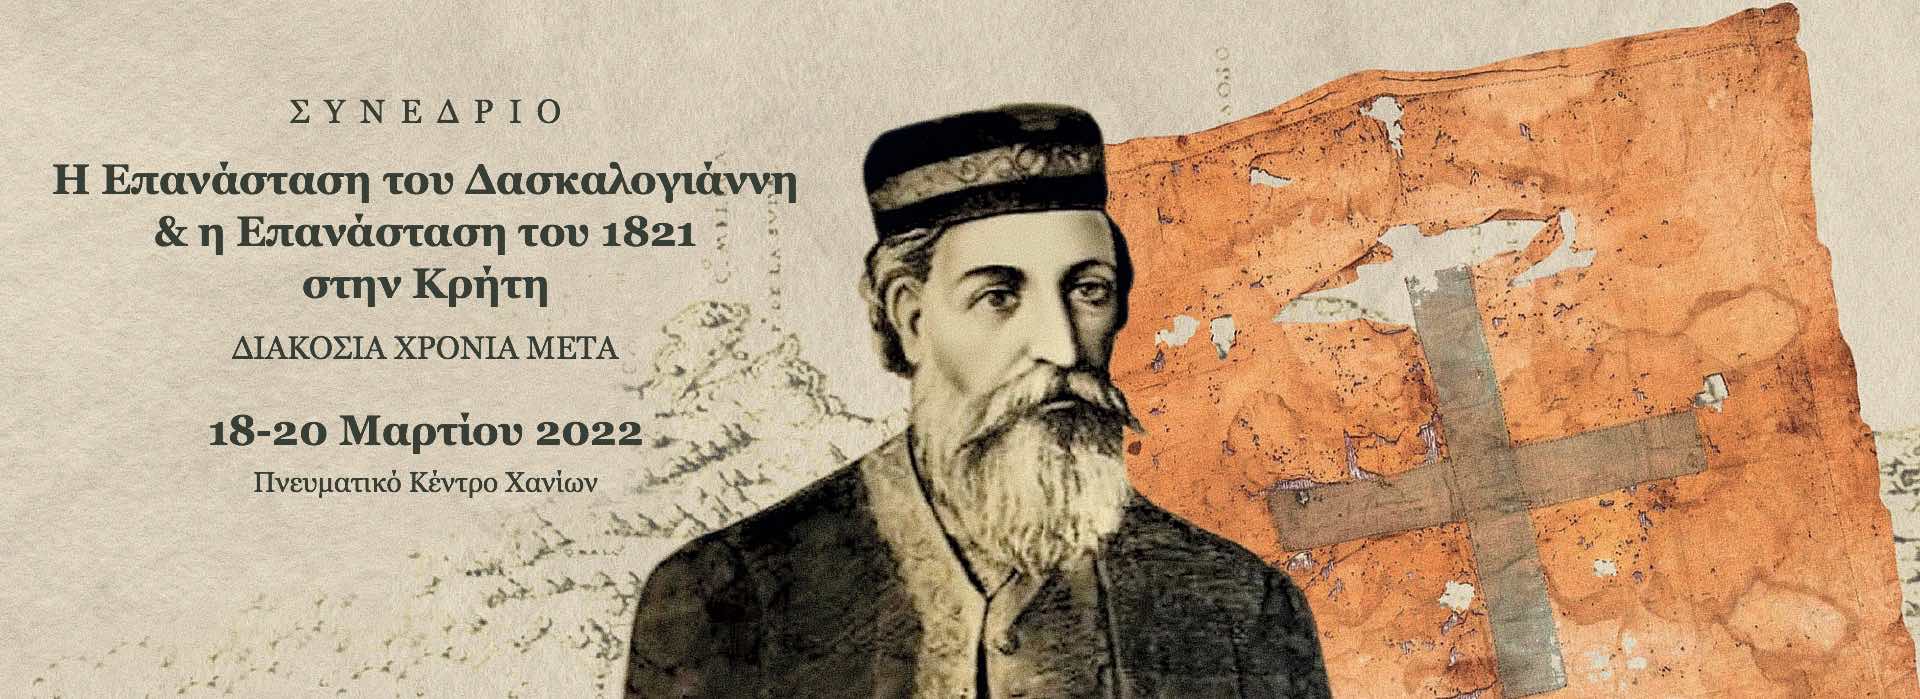 Συνέδριο - Η Επανάσταση του Δασκαλογιάννη και η Επανάσταση του 1821 στην Κρήτη. Διακόσια χρόνια μετά.